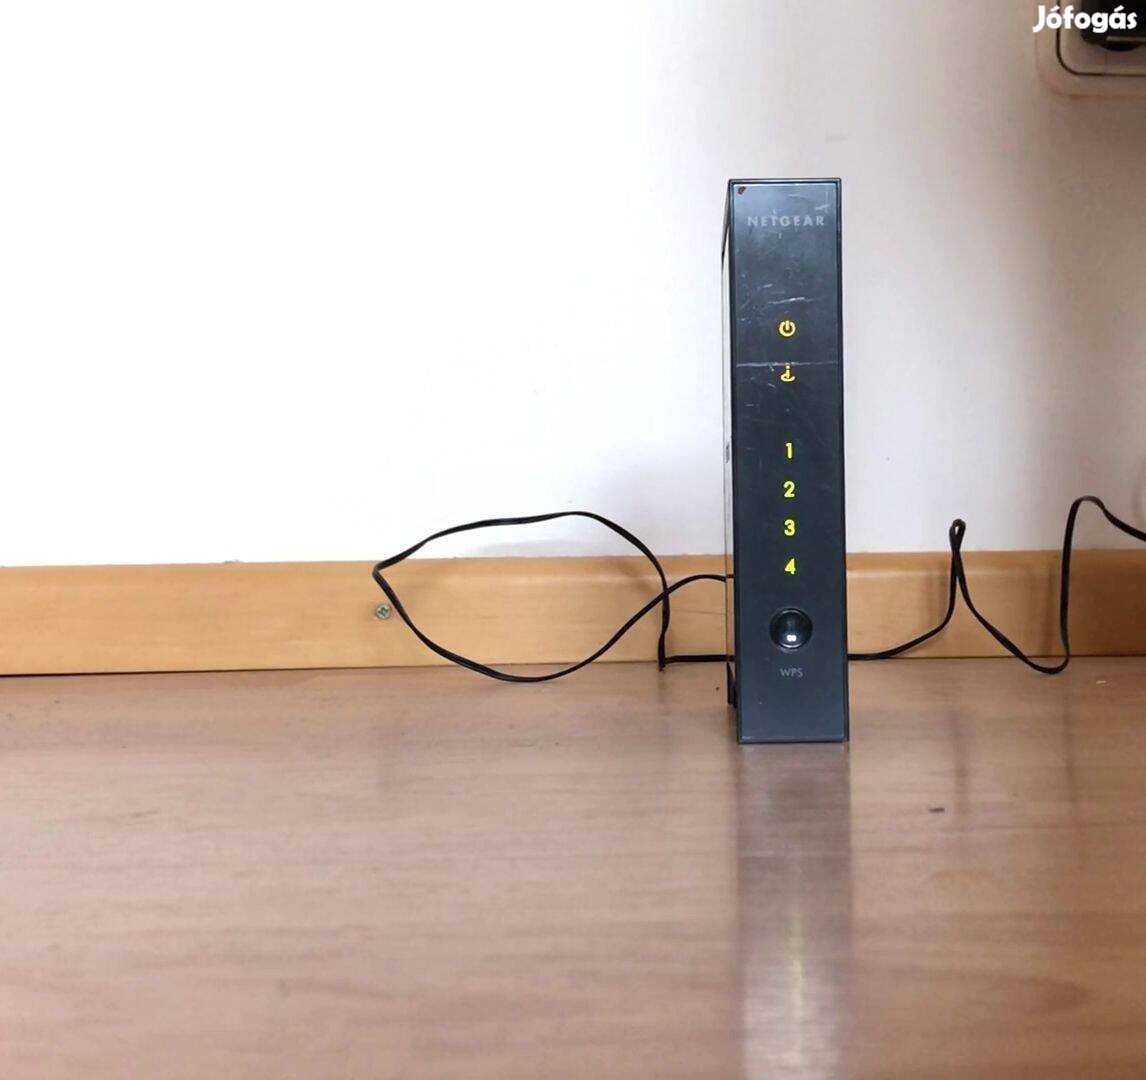 Netgear N300 router